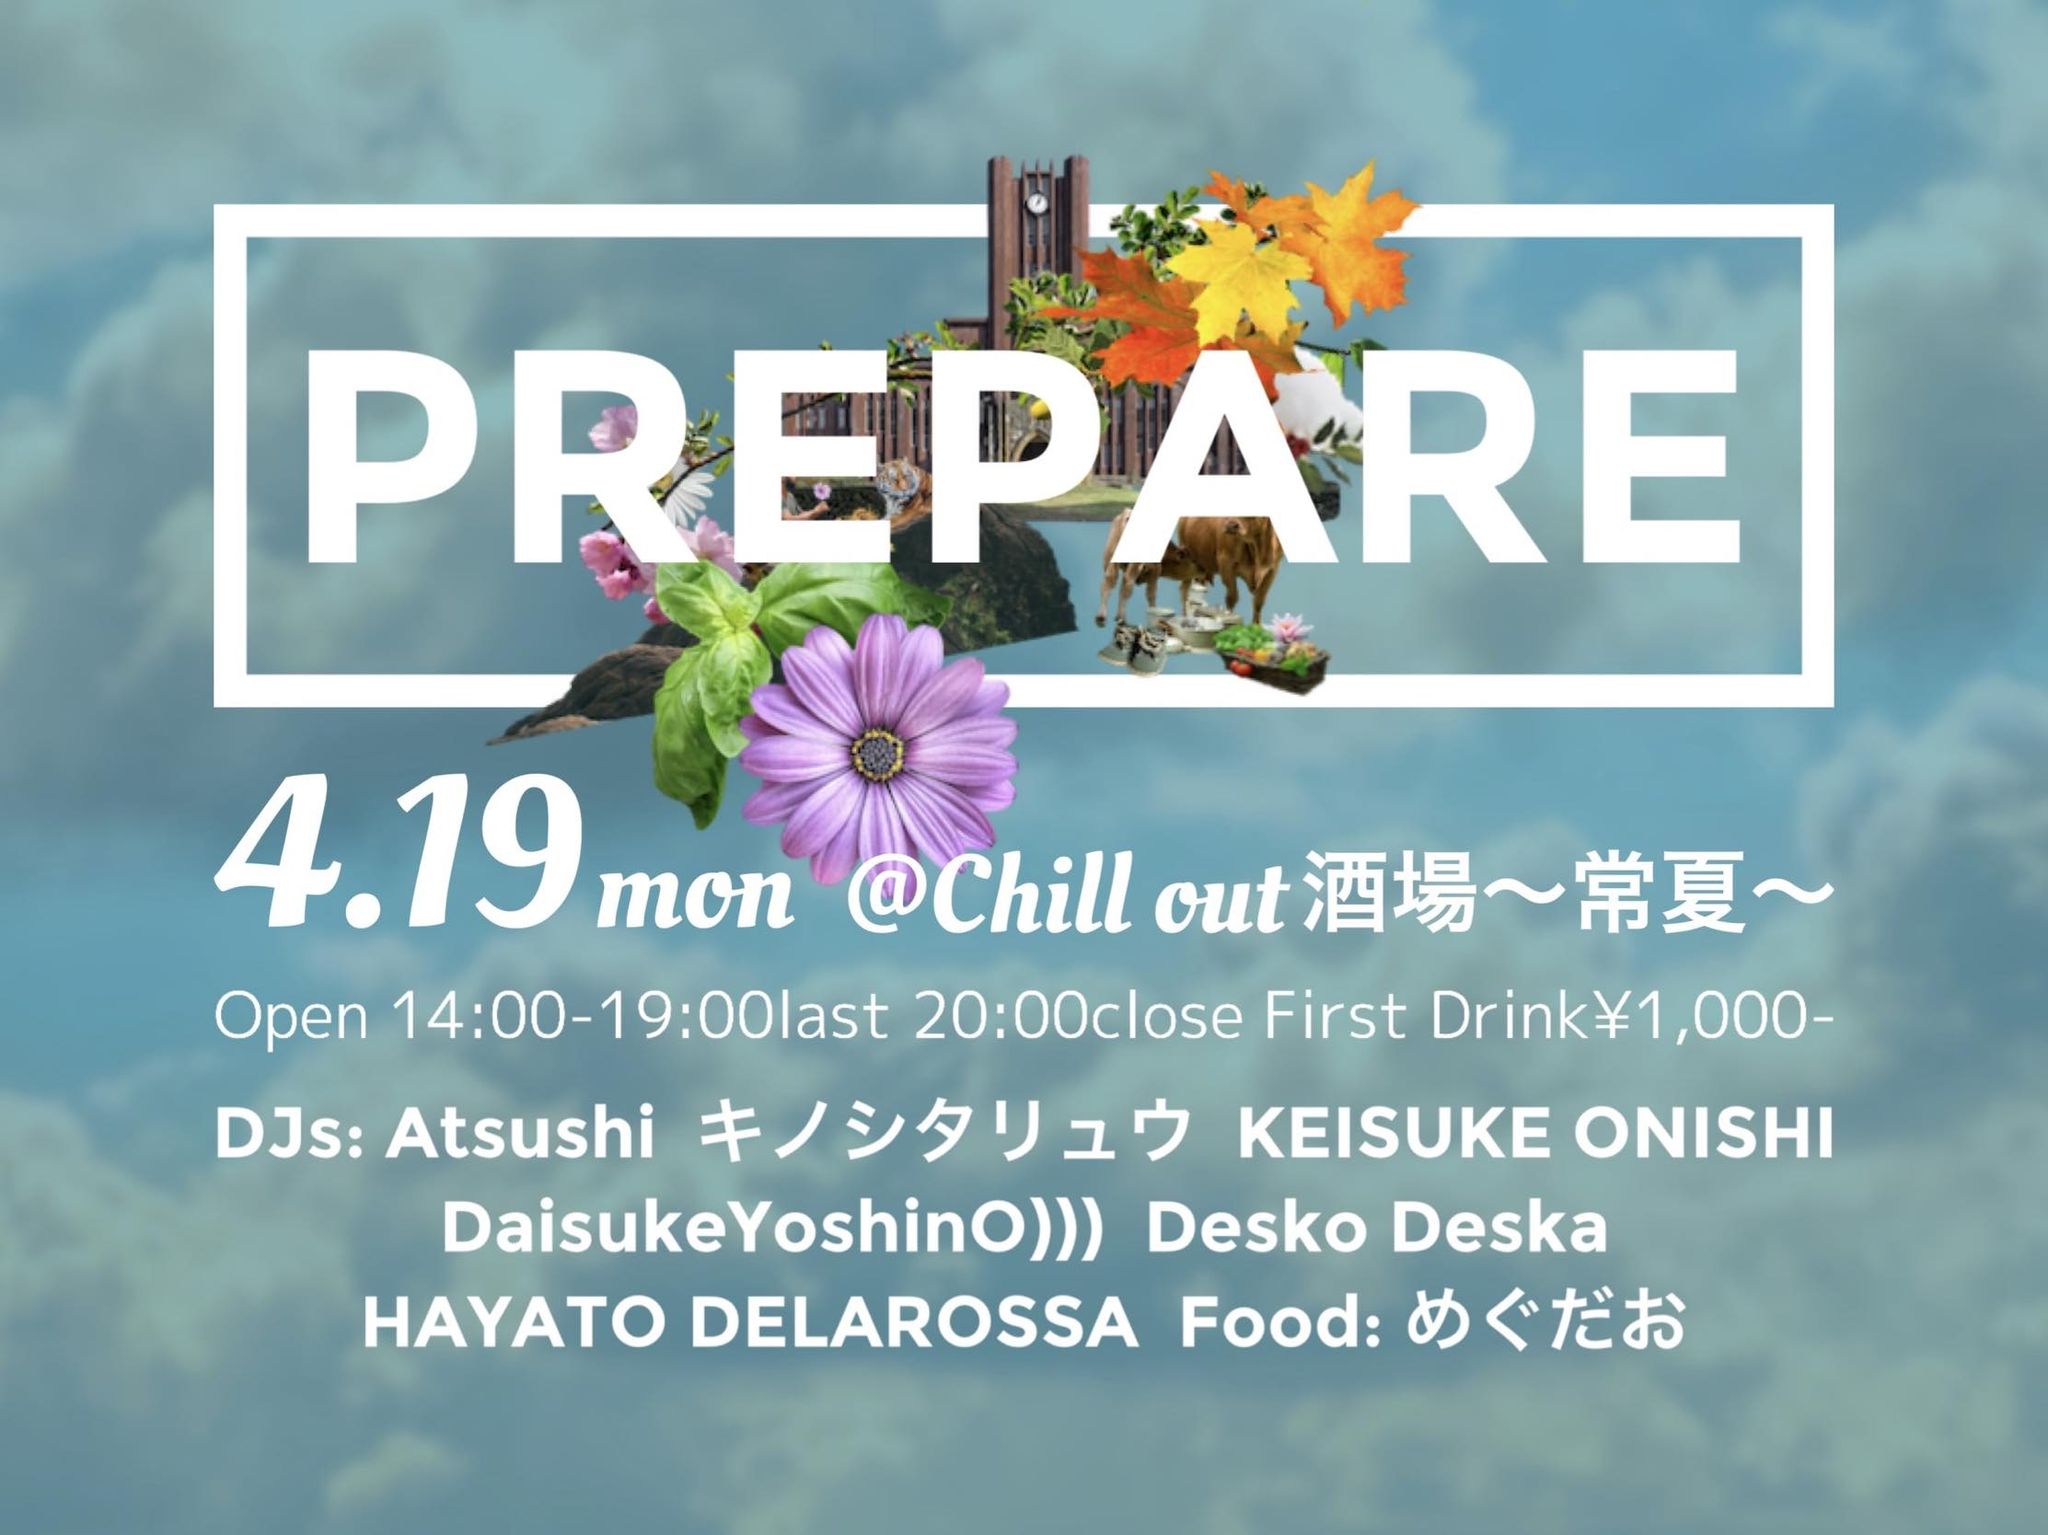 2021.4.19 mon “prepare” @Chill out酒場〜常夏〜